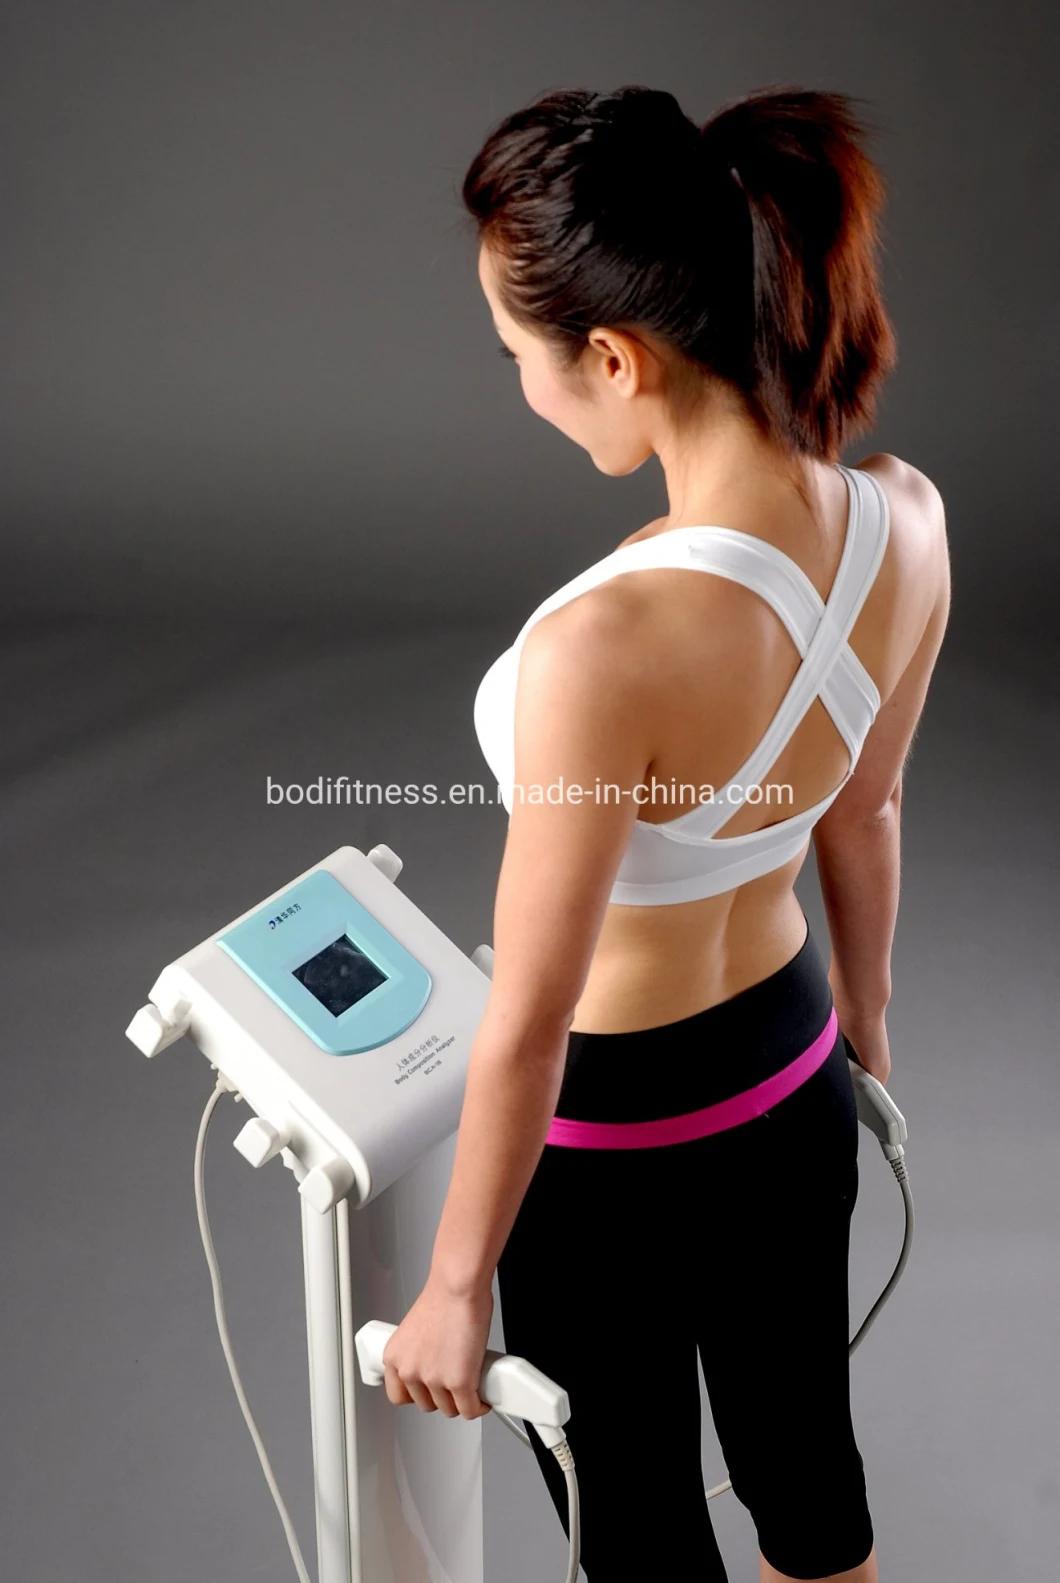 Body Composition Analyzer Health Analyzer Body Fat Monitor with Printer